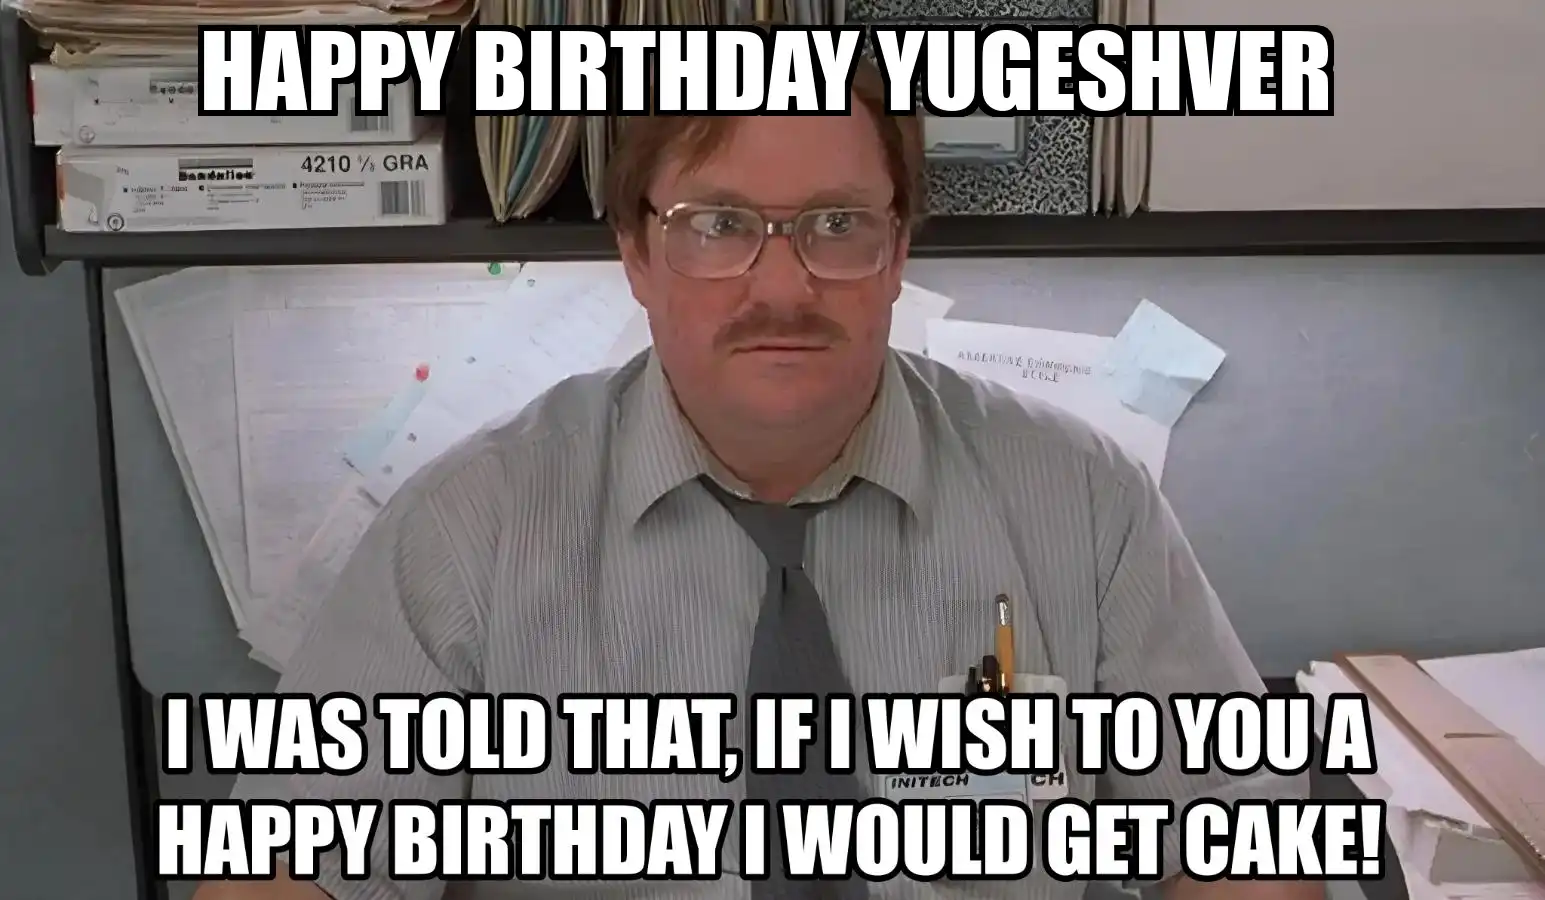 Happy Birthday Yugeshver I Would Get A Cake Meme